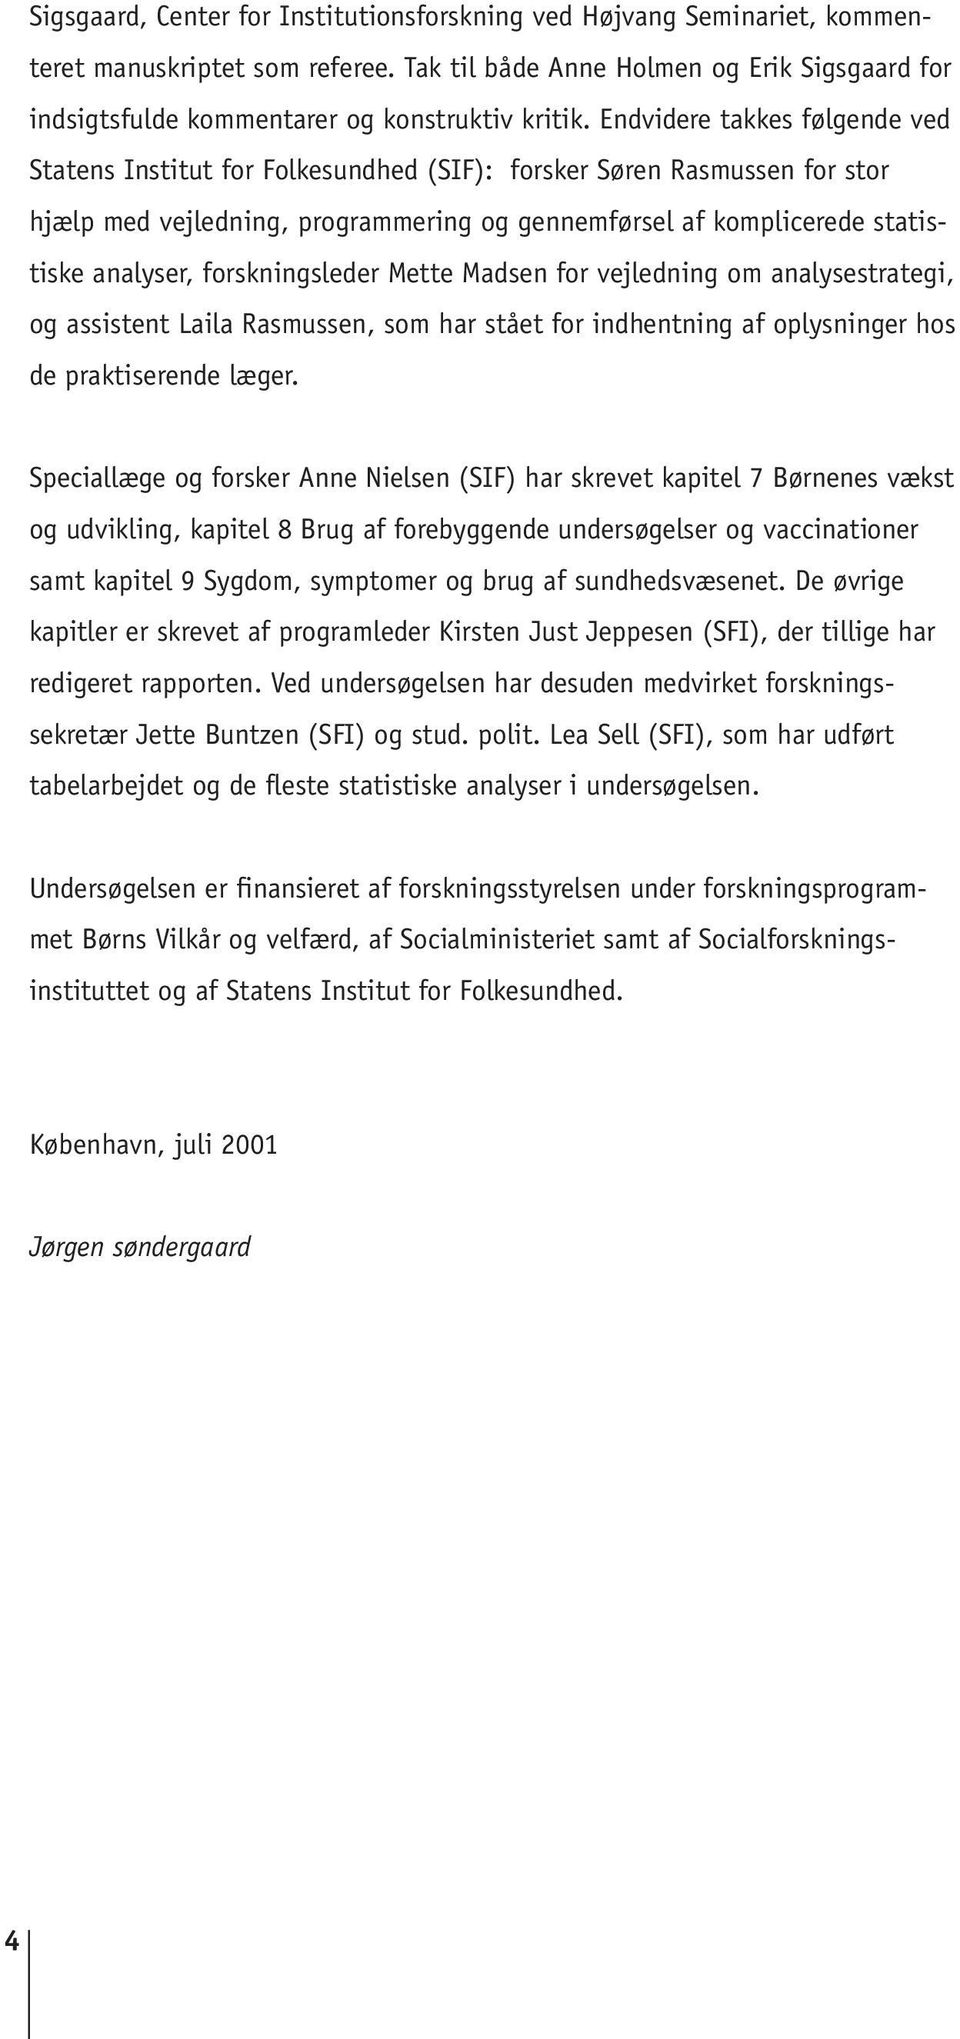 Tosprogede småbørn i Danmark - PDF Gratis download